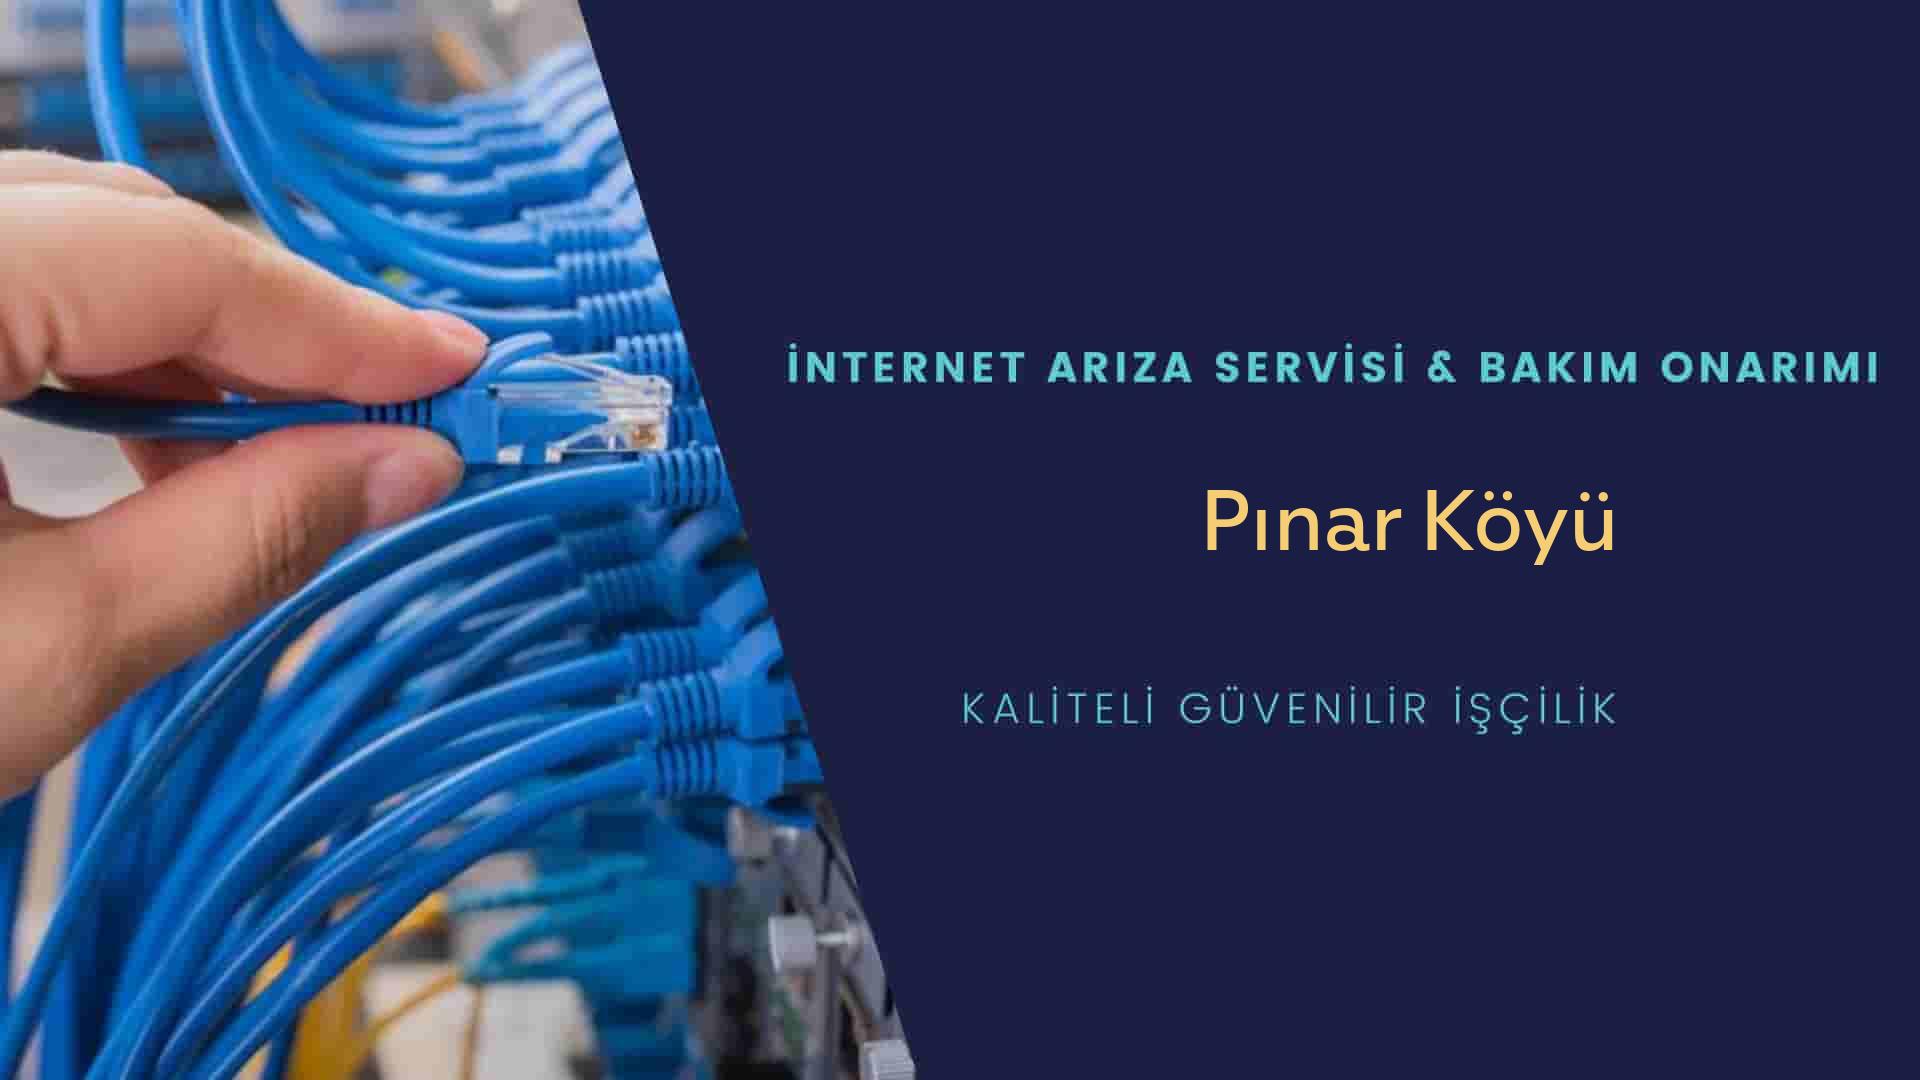 Pınar Köyü internet kablosu çekimi yapan yerler veya elektrikçiler mi? arıyorsunuz doğru yerdesiniz o zaman sizlere 7/24 yardımcı olacak profesyonel ustalarımız bir telefon kadar yakındır size.